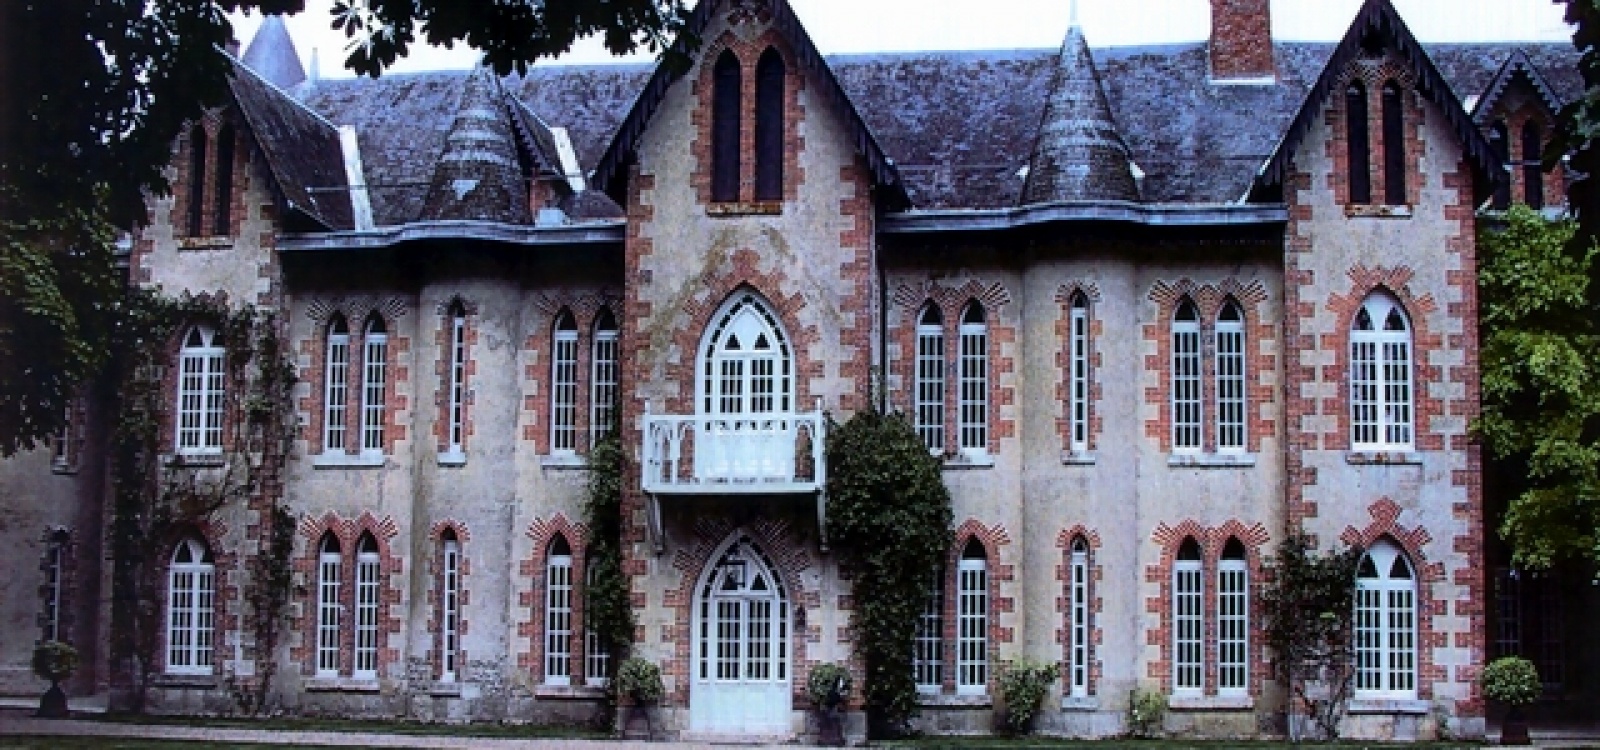 Eure et Loir,France,Château,1053